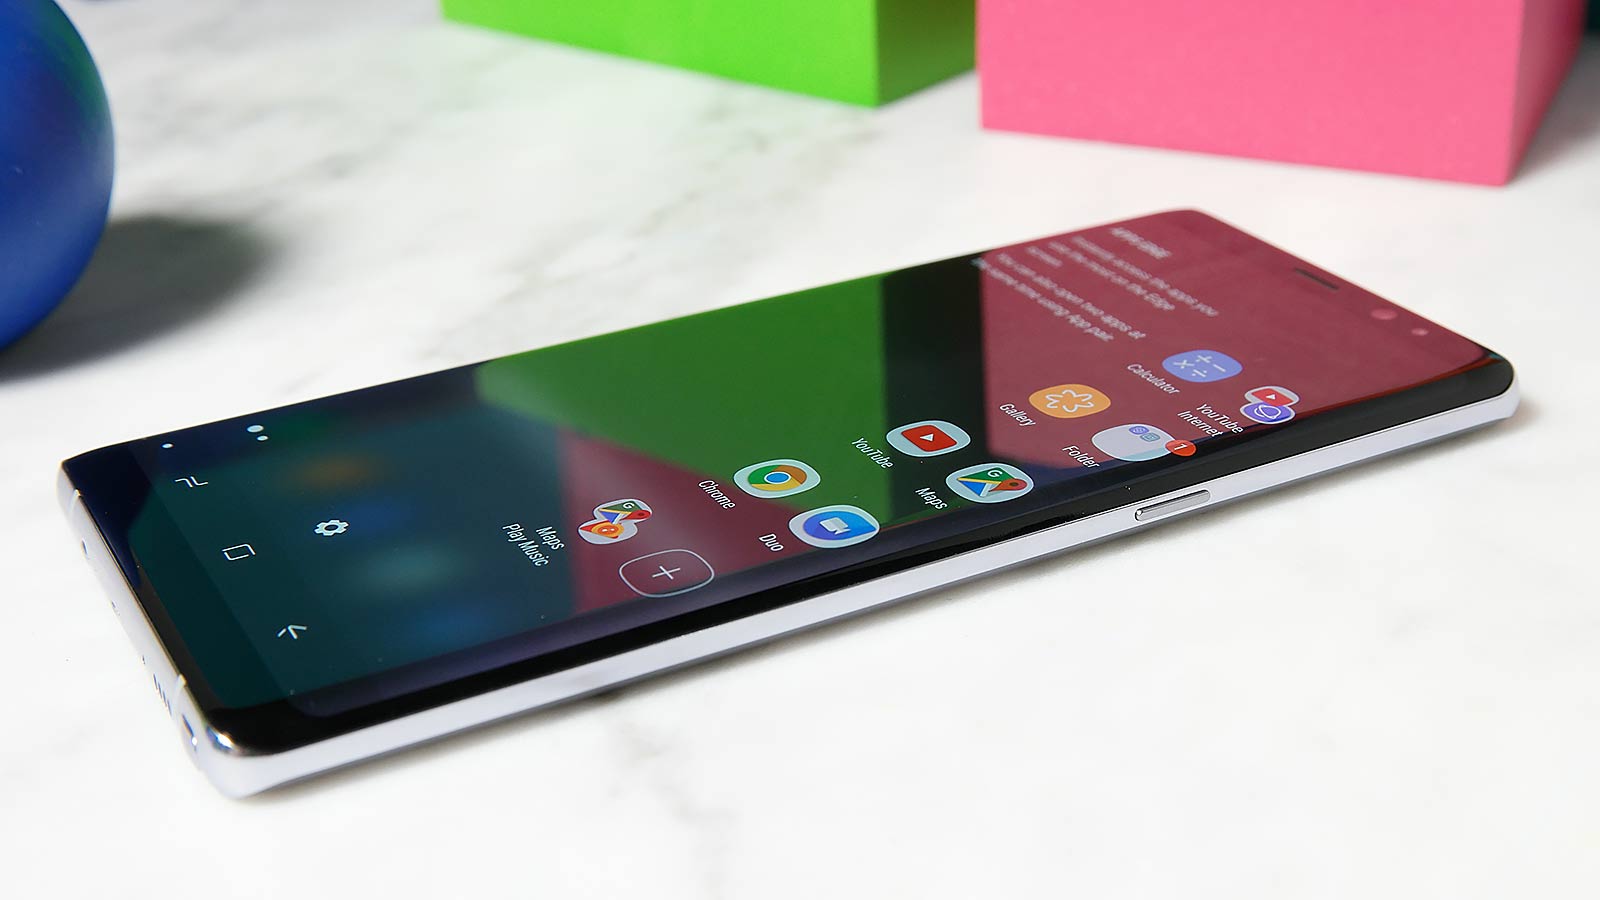 Samsung Note 8: The Return Of The Original Jumbo Phone